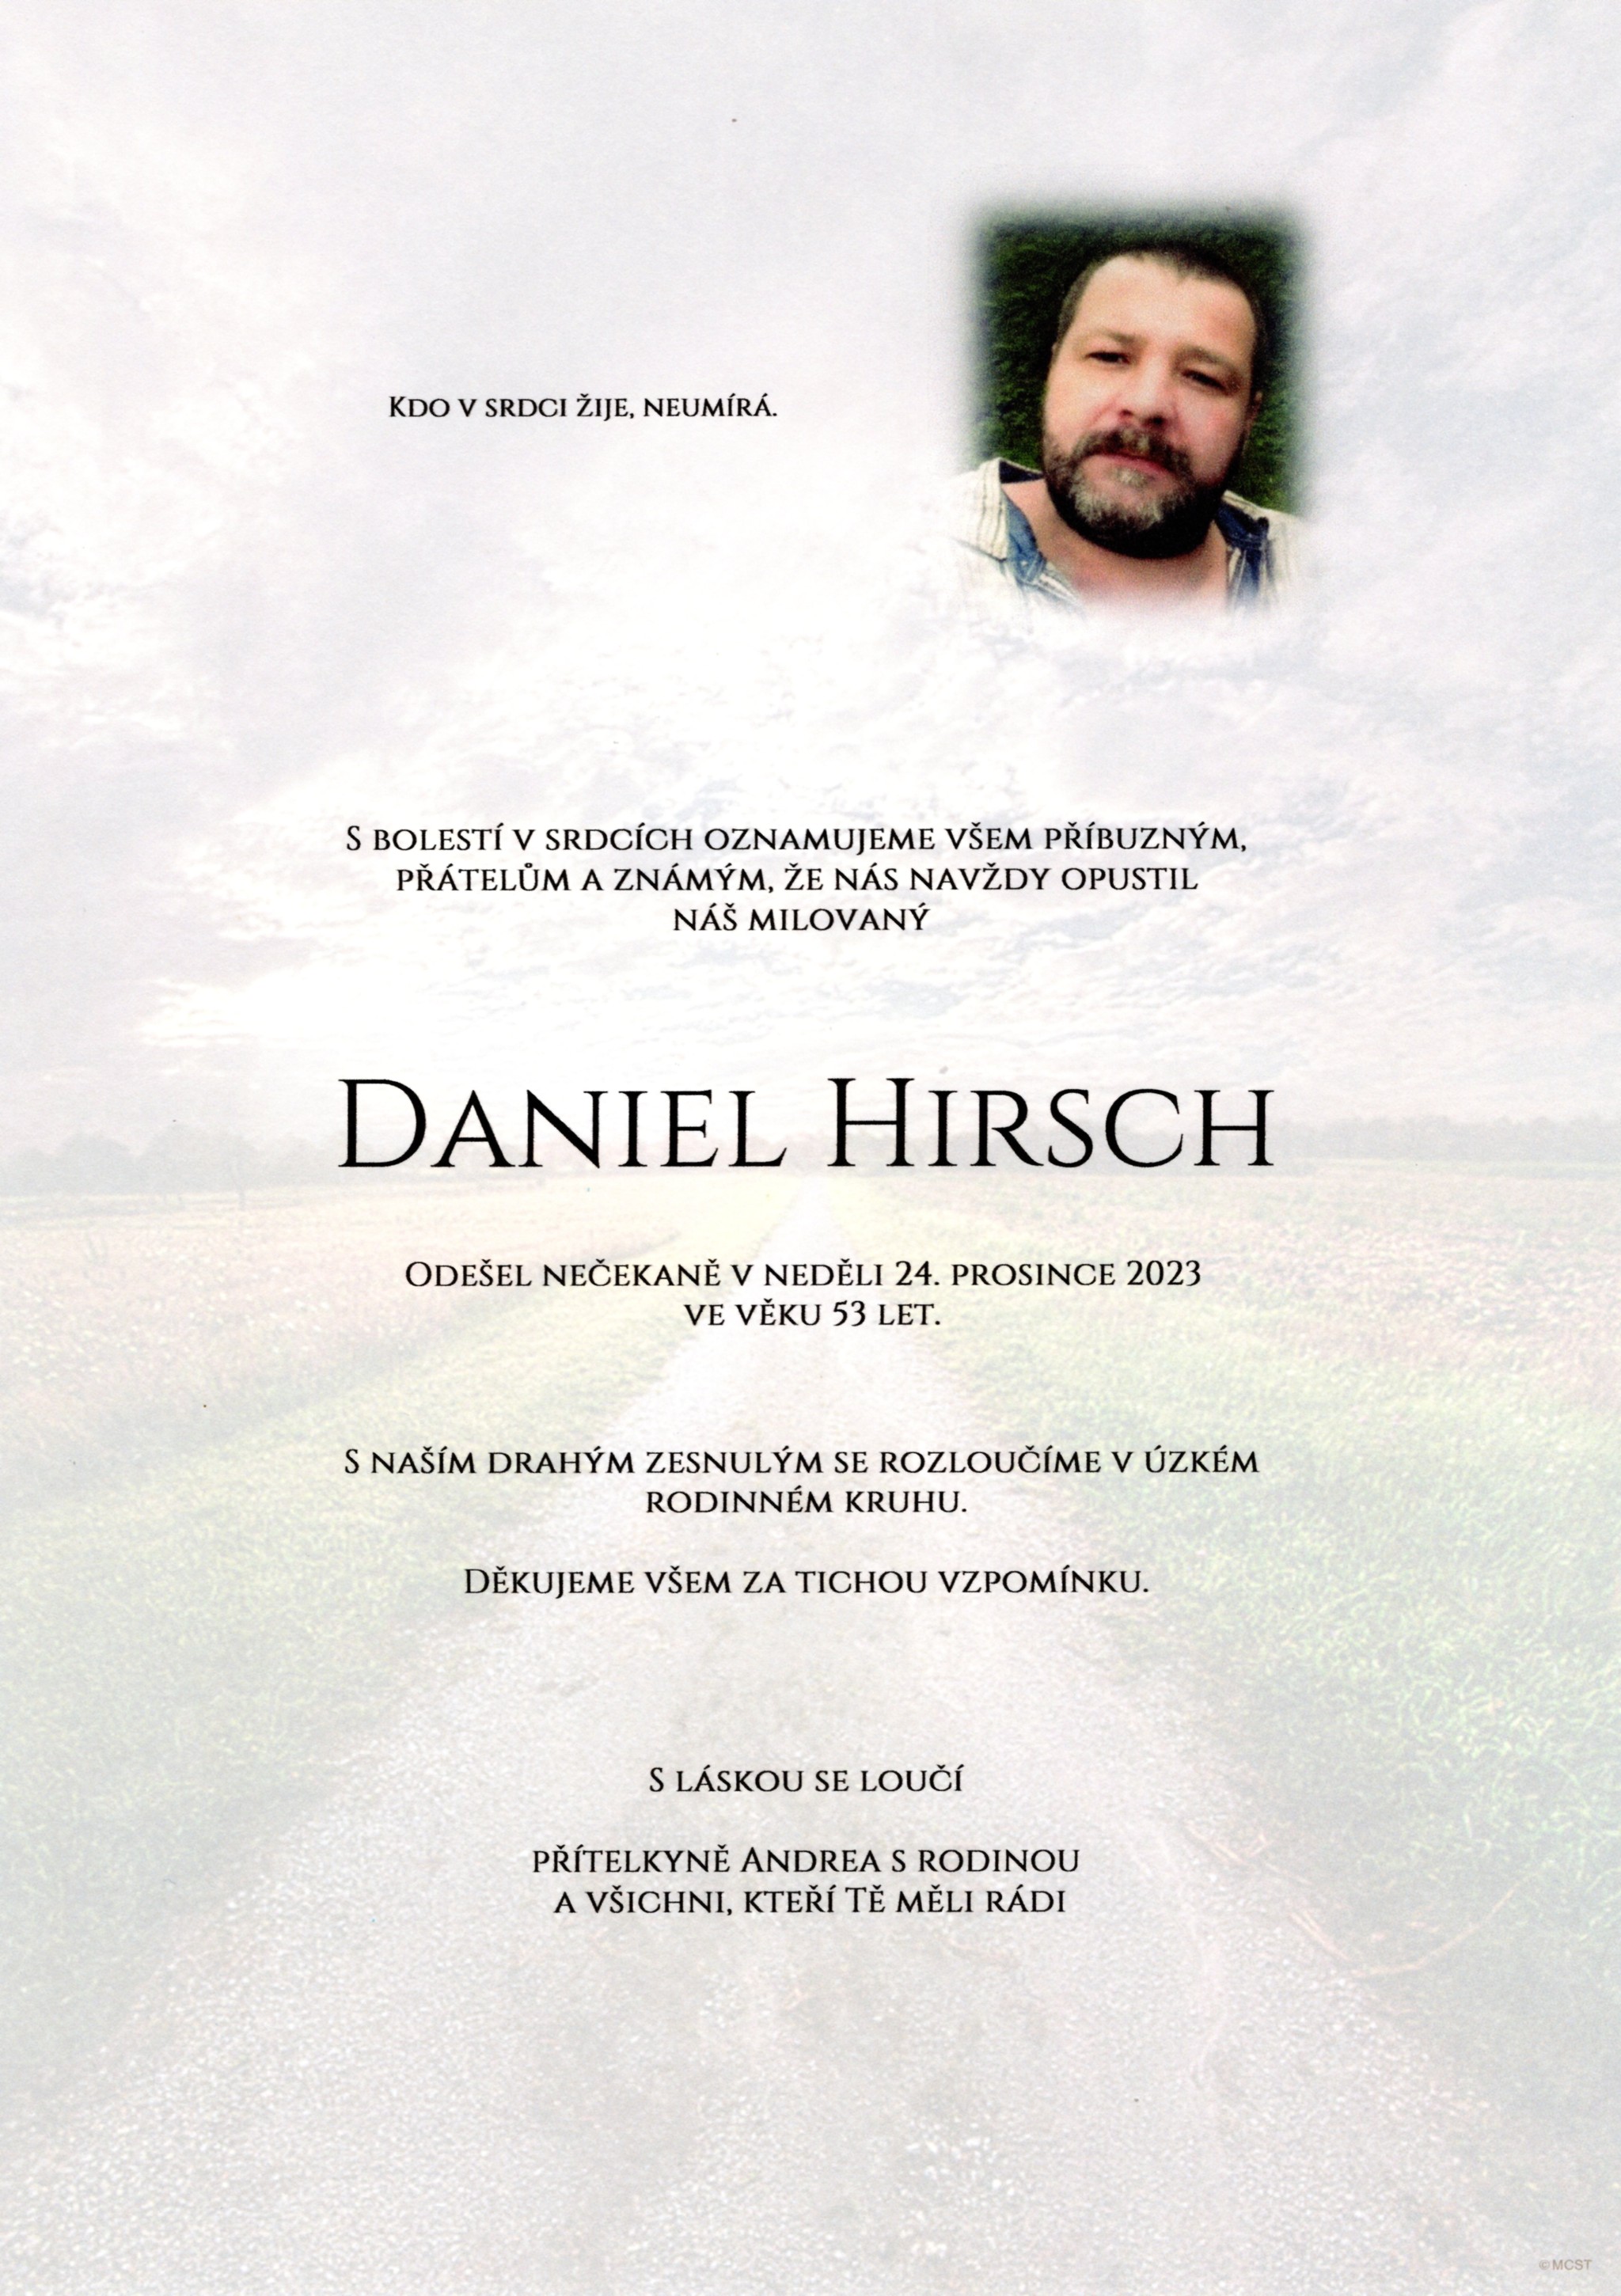 Daniel Hirsch